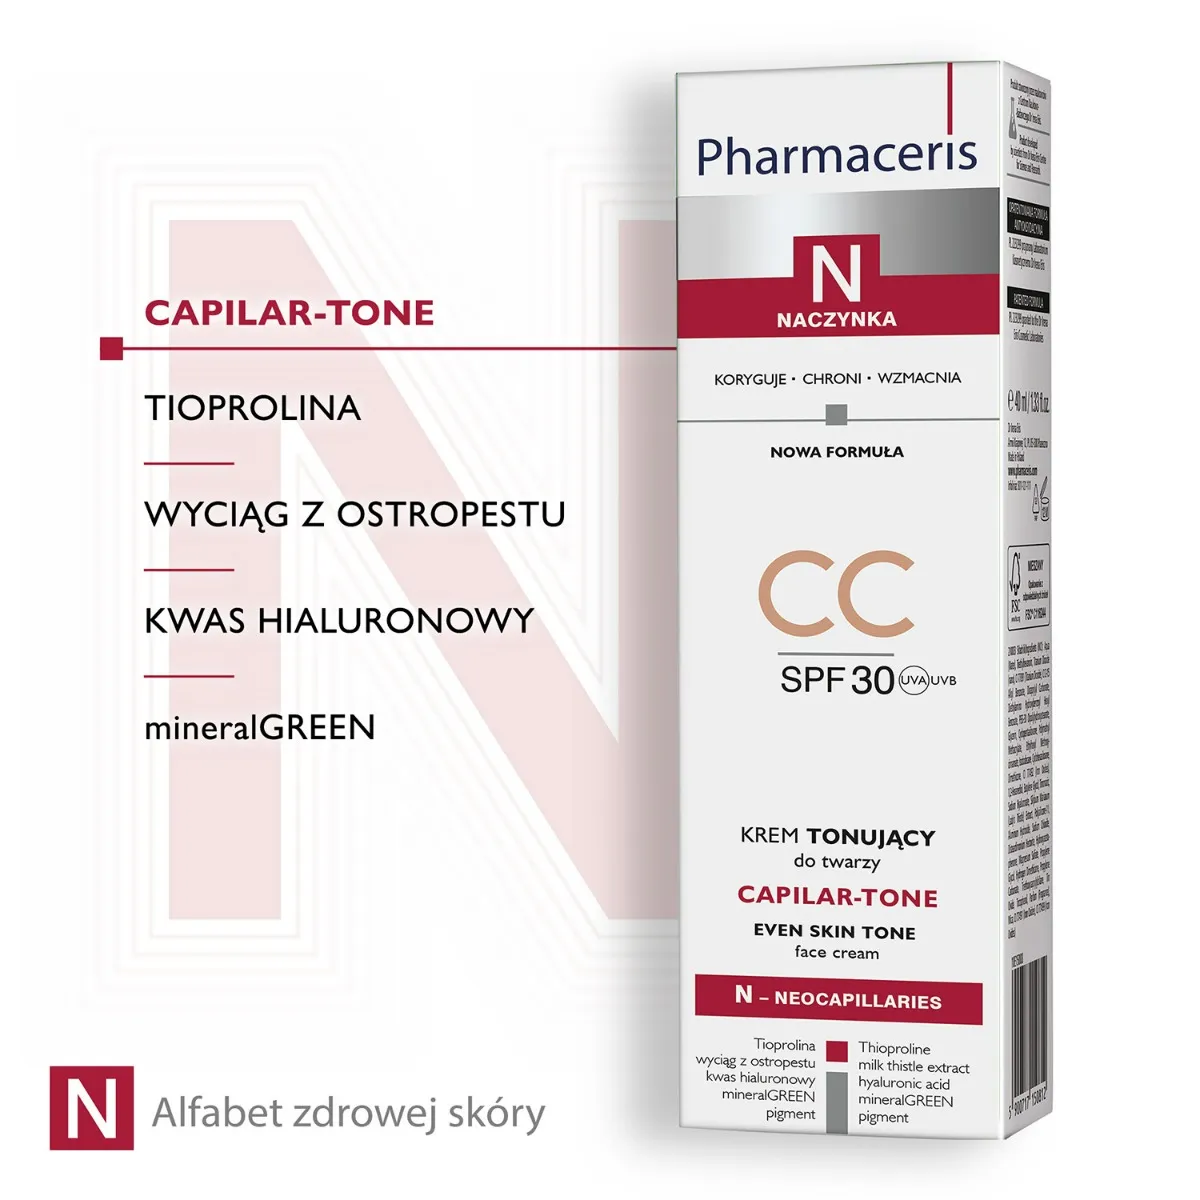 Pharmaceris N Capilar-Tone, krem tonujący CC do skóry naczynkowej i nadreaktywnej, SPF30, 40ml 